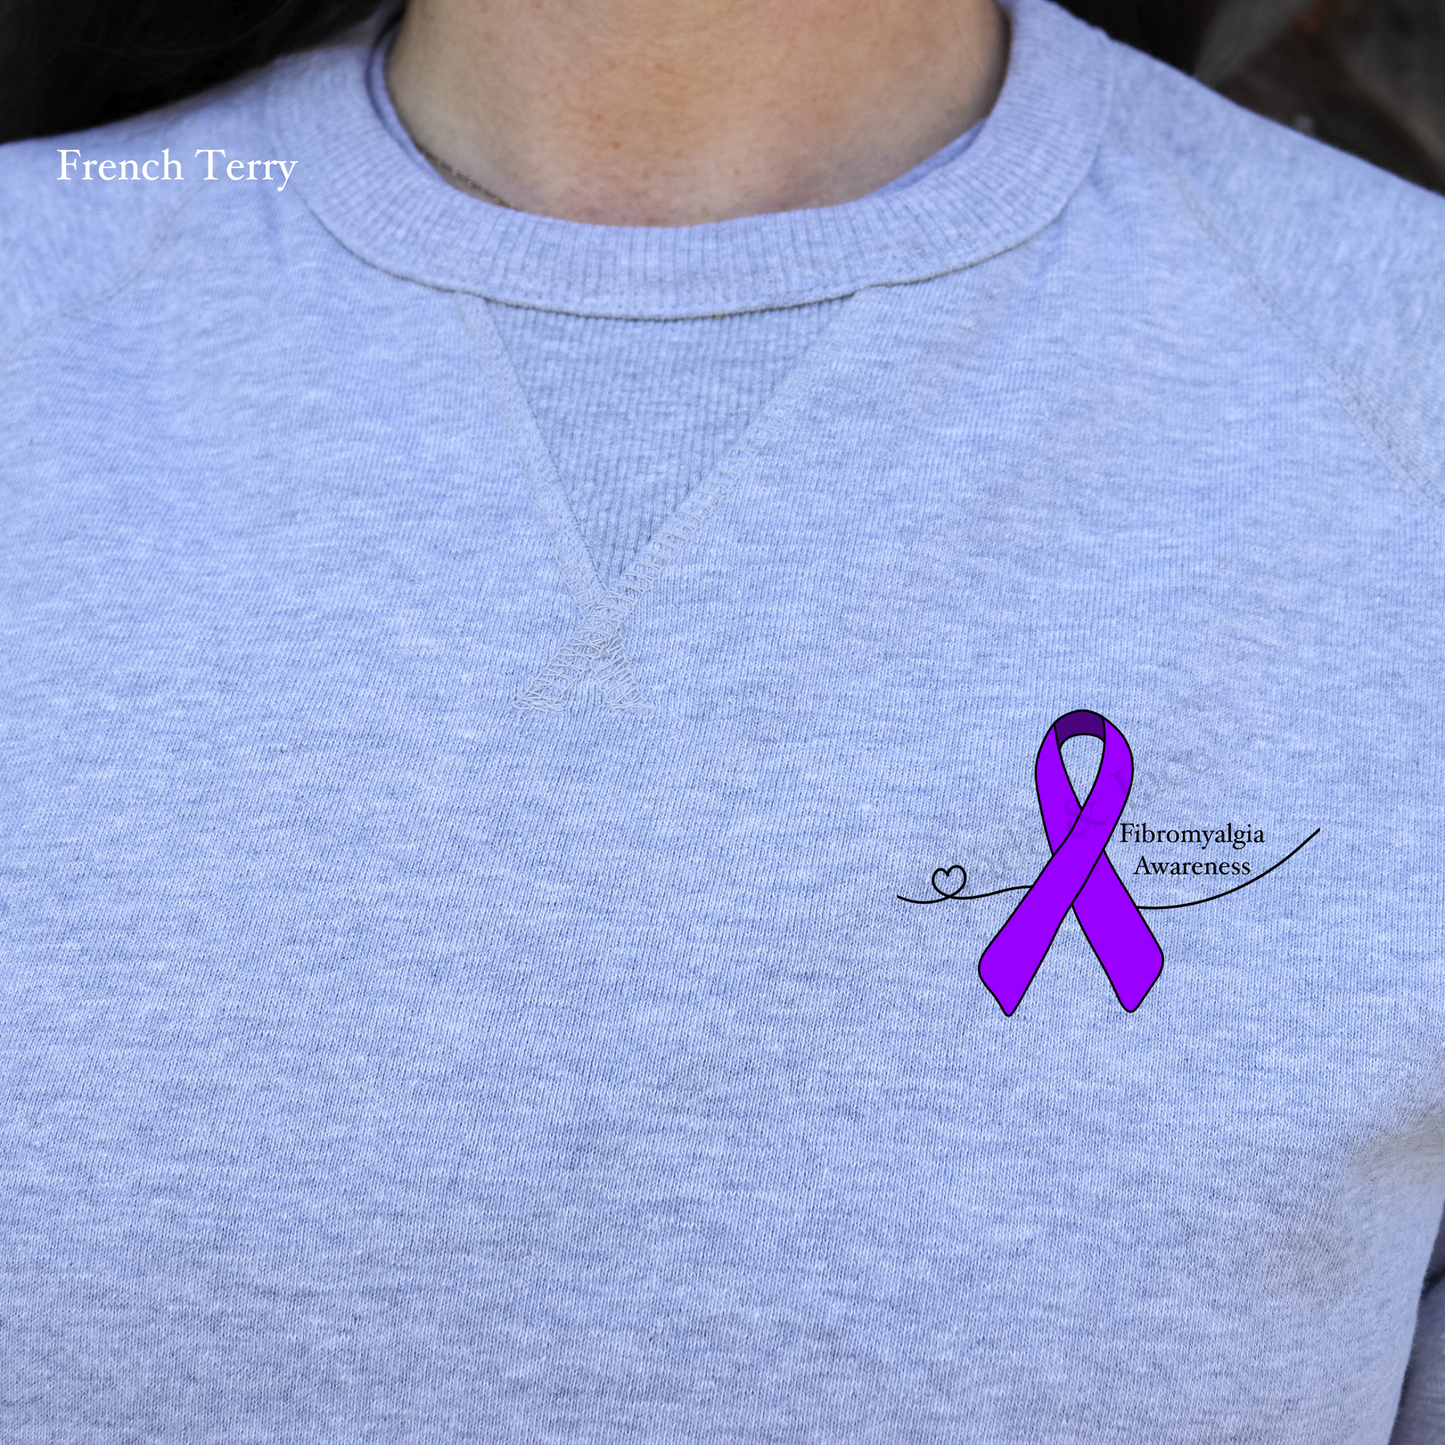 Fibromyalgia Awareness Crewneck Sweatshirt